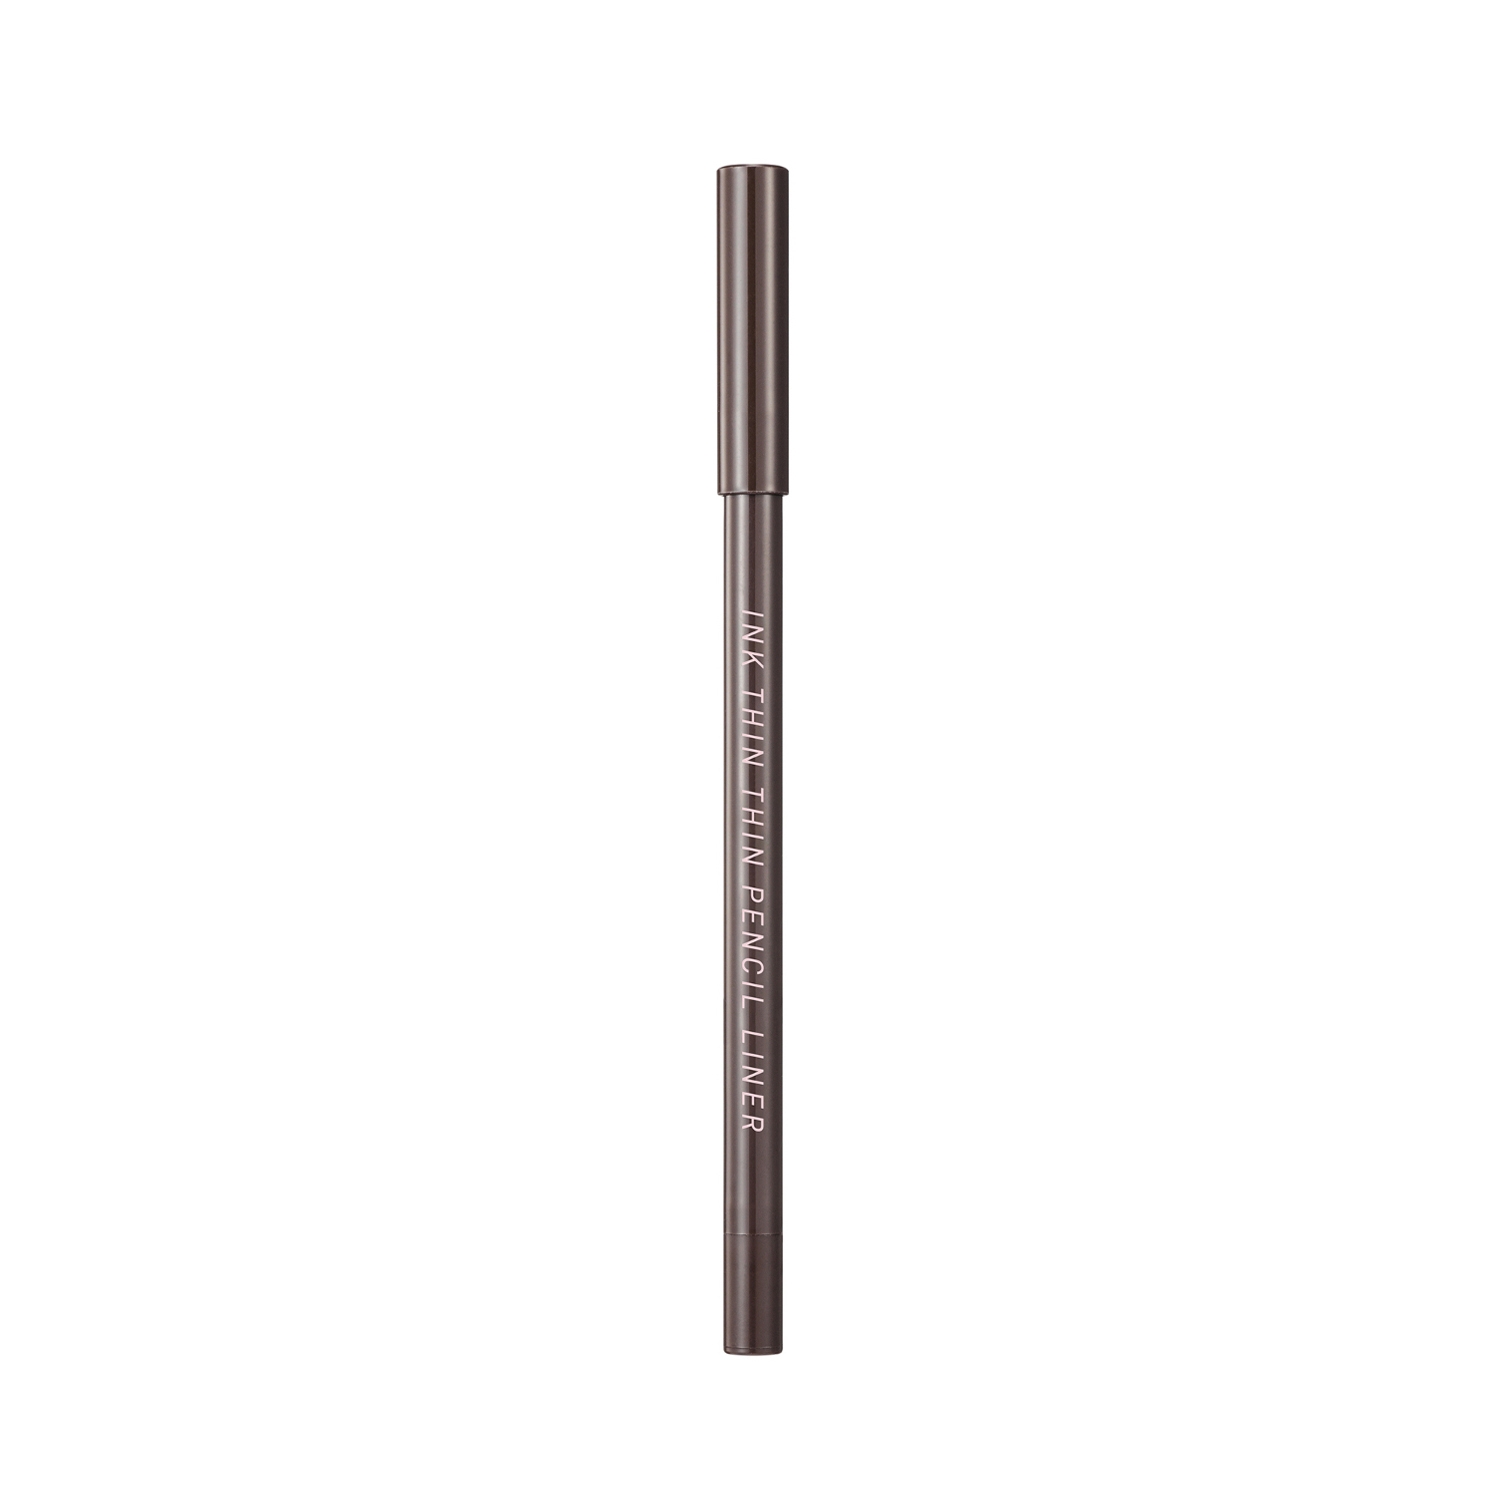 Peripera Ink Thin Thin Pencil Eyeliner - 02 Cacao Brown (0.13g)